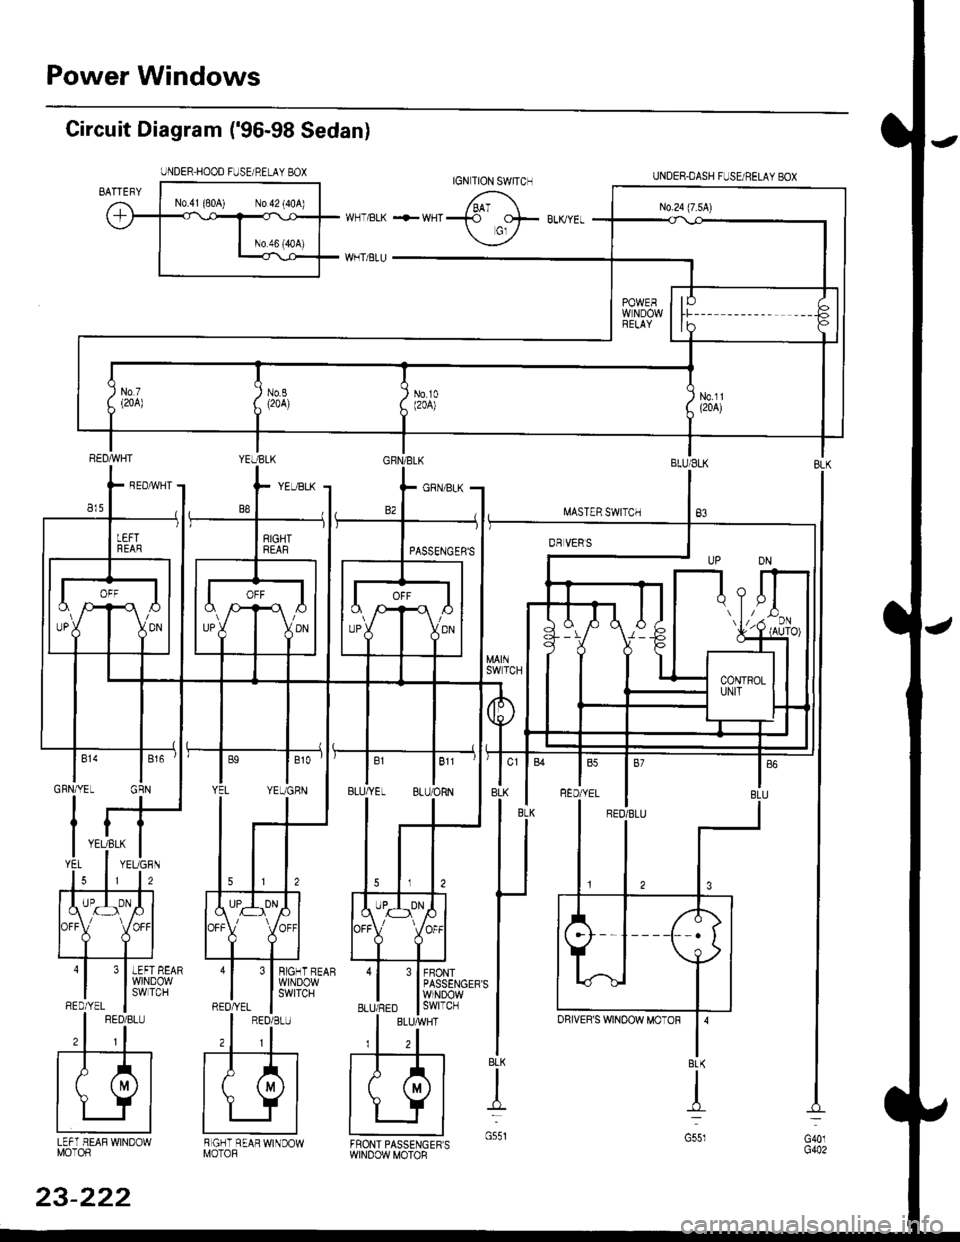 HONDA CIVIC 1996 6.G Workshop Manual Power Windows
Circuit Diagram (96-98 Sedan)
UNDER HOOD FUSE/RELAY BOX
I.iASTER SWITCH
UNDER.DASH FUSUBELAYEOX
BLU/ELK
B3
3 I BIGHT BEAR
l$,]ilP3,y
FBONTPASSENGERSWINDOWswtTcH
BLK
t
G551LEFT HEAF WI